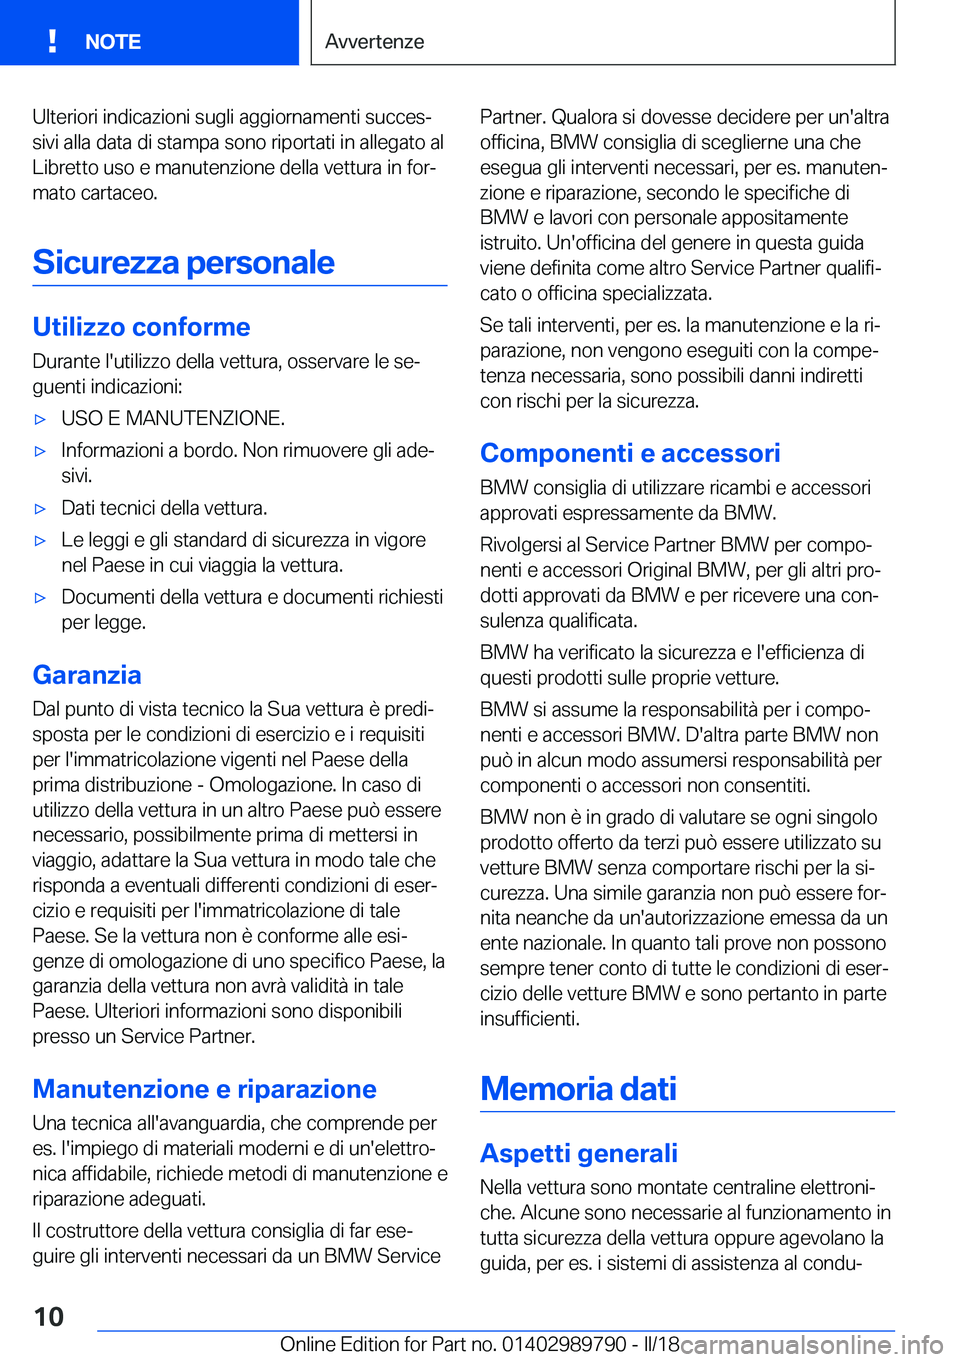 BMW M5 2018  Libretti Di Uso E manutenzione (in Italian) �U�l�t�e�r�i�o�r�i� �i�n�d�i�c�a�z�i�o�n�i� �s�u�g�l�i� �a�g�g�i�o�r�n�a�m�e�n�t�i� �s�u�c�c�e�sª
�s�i�v�i� �a�l�l�a� �d�a�t�a� �d�i� �s�t�a�m�p�a� �s�o�n�o� �r�i�p�o�r�t�a�t�i� �i�n� �a�l�l�e�g�a�t